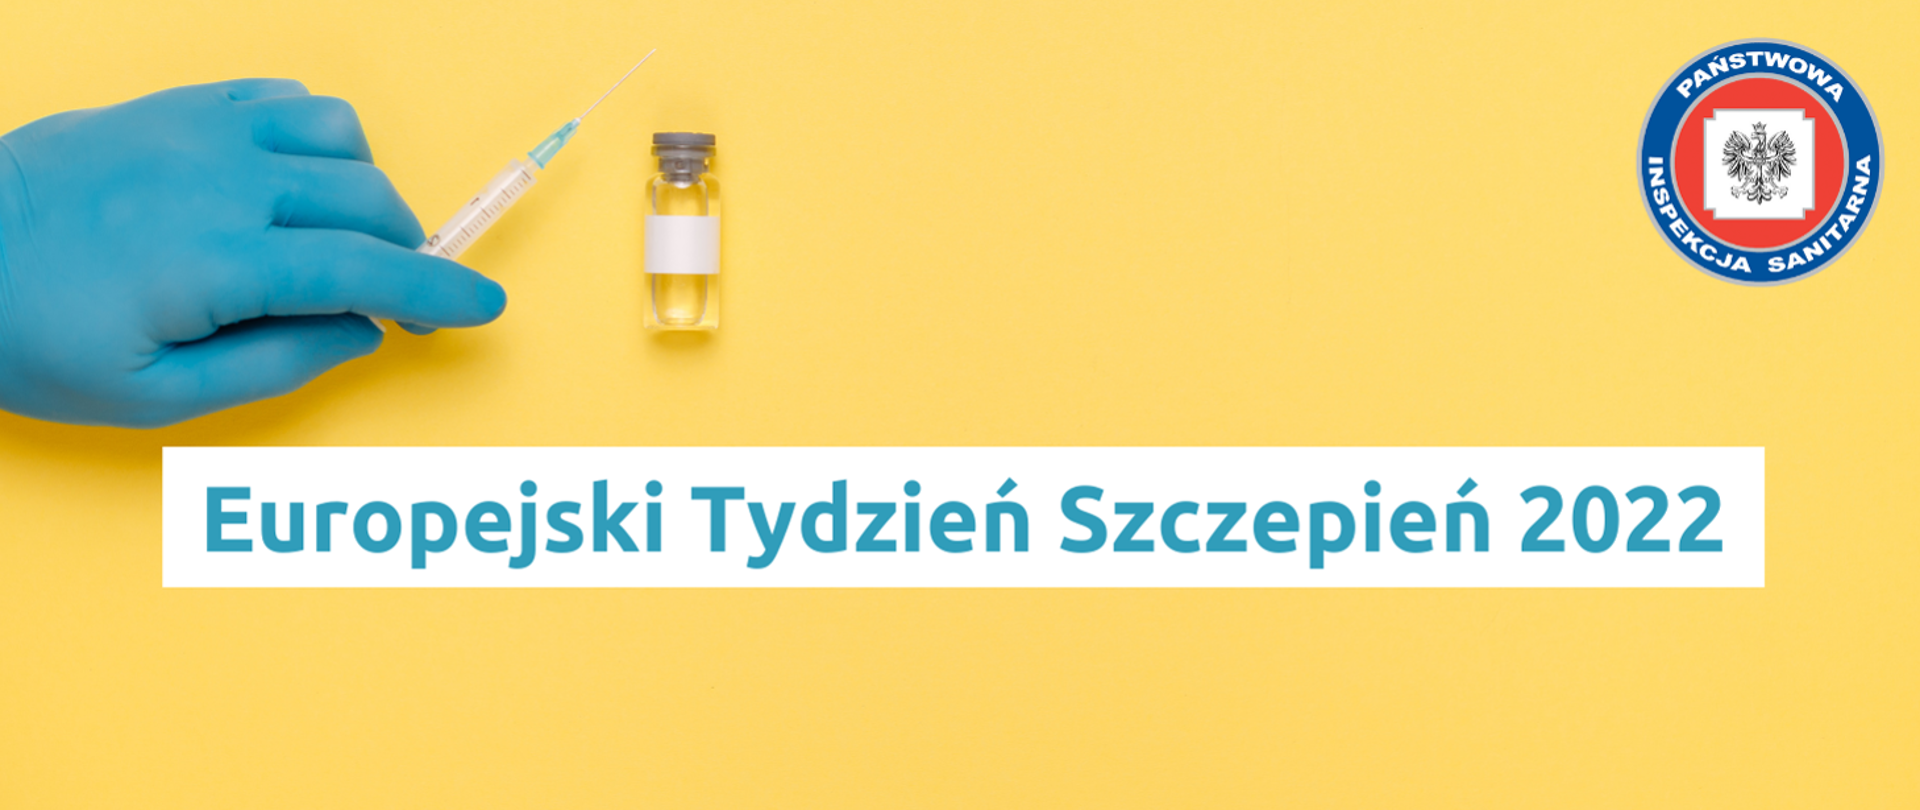 Grafika z żółtym tłem przedstawiająca rękę w lateksowej, niebieskiej rękawiczce trzymająca strzykawkę ze szczepionką. Obok znajduję się fiolka ze szczepionką. W górnym prawym rogu znajduje się logo Inspekcji Sanitarnej a u dołu grafiki niebieski napis na białym tle: Europejski Tydzień Szczepień 2022